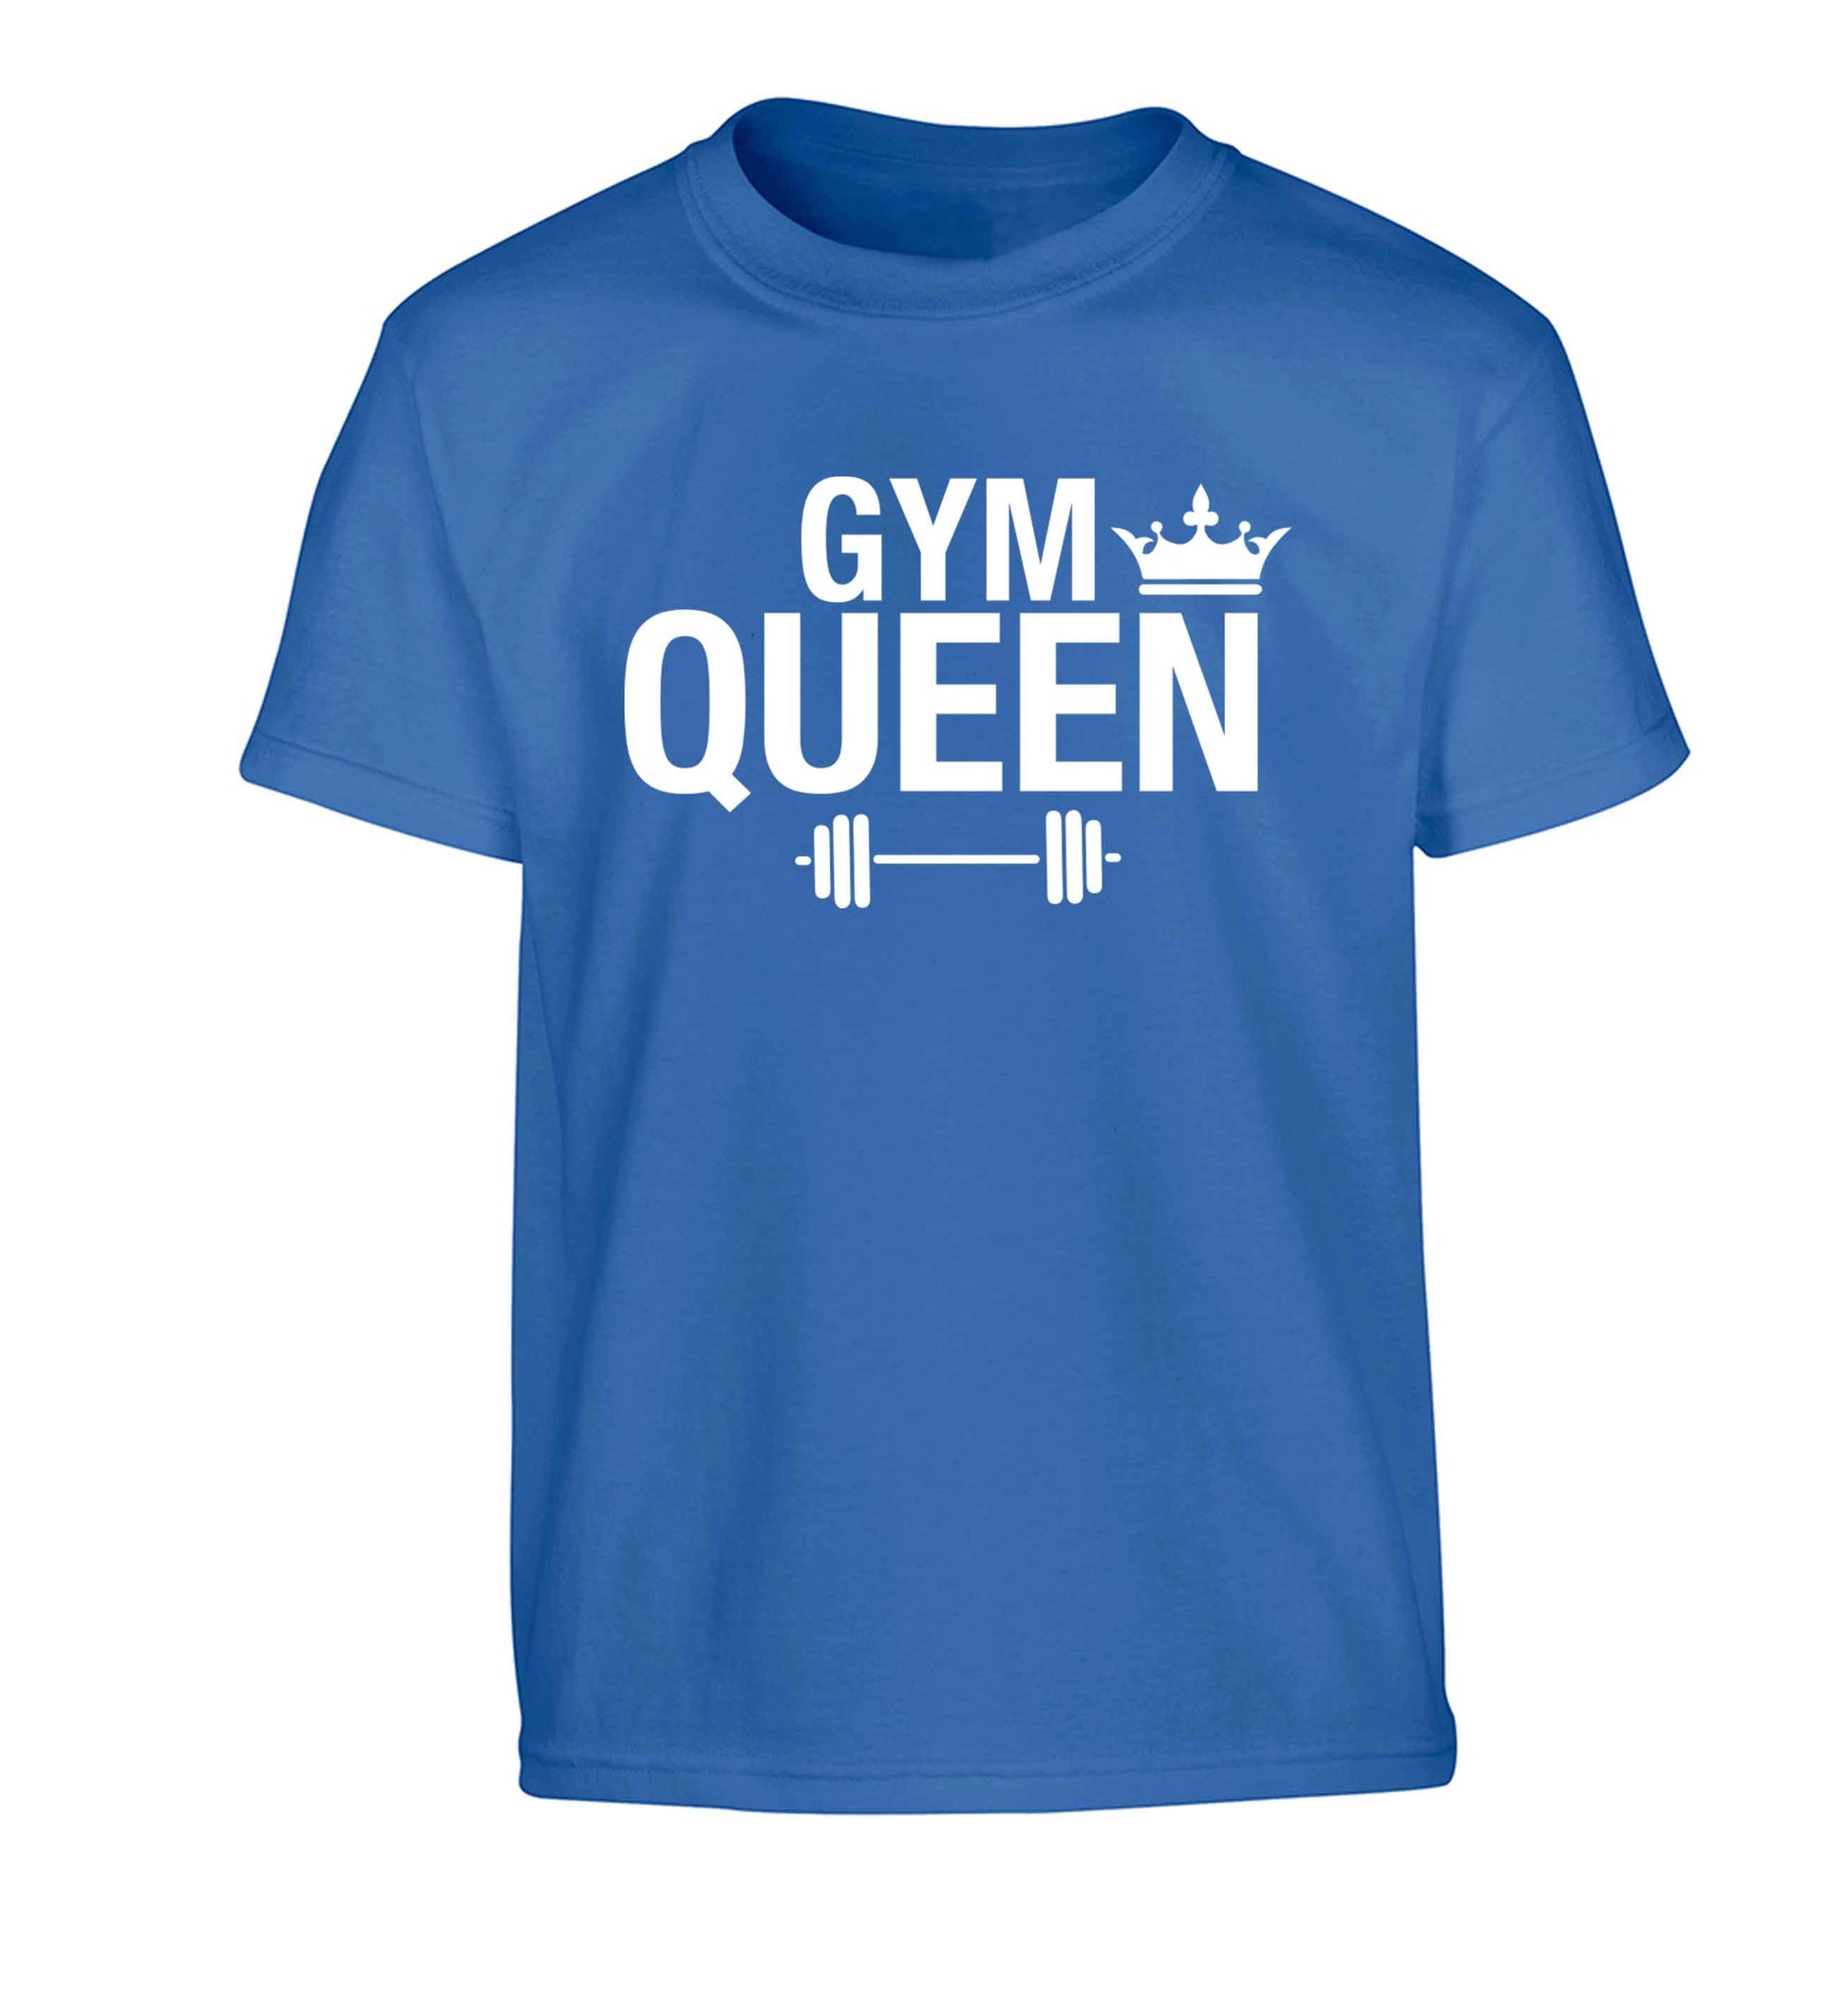 Gym queen Children's blue Tshirt 12-13 Years